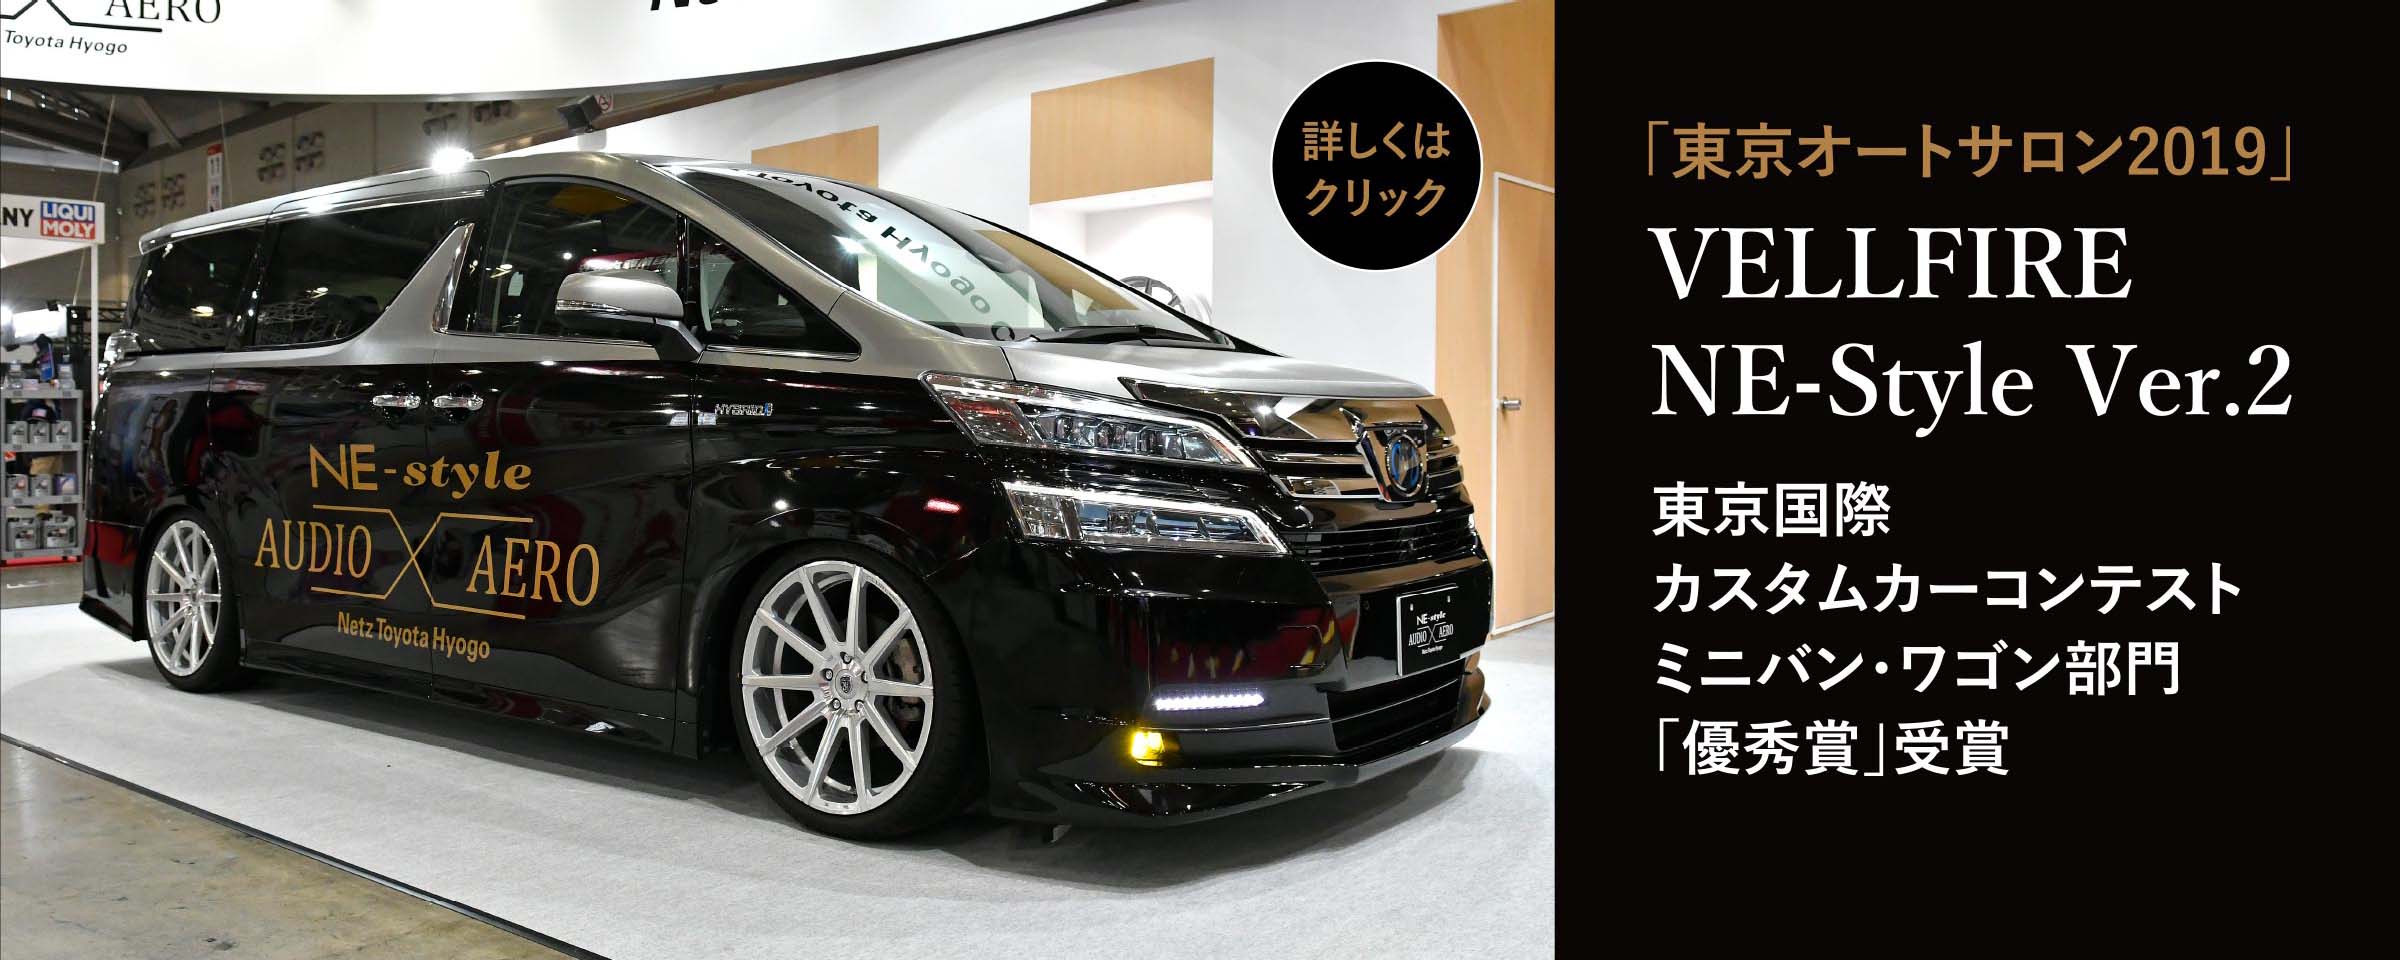 「東京オートサロン2019」VELLFIRENE-Style Ver.2 東京国際カスタムカーコンテスト ミニバン・ワゴン部門 「優秀賞」受賞